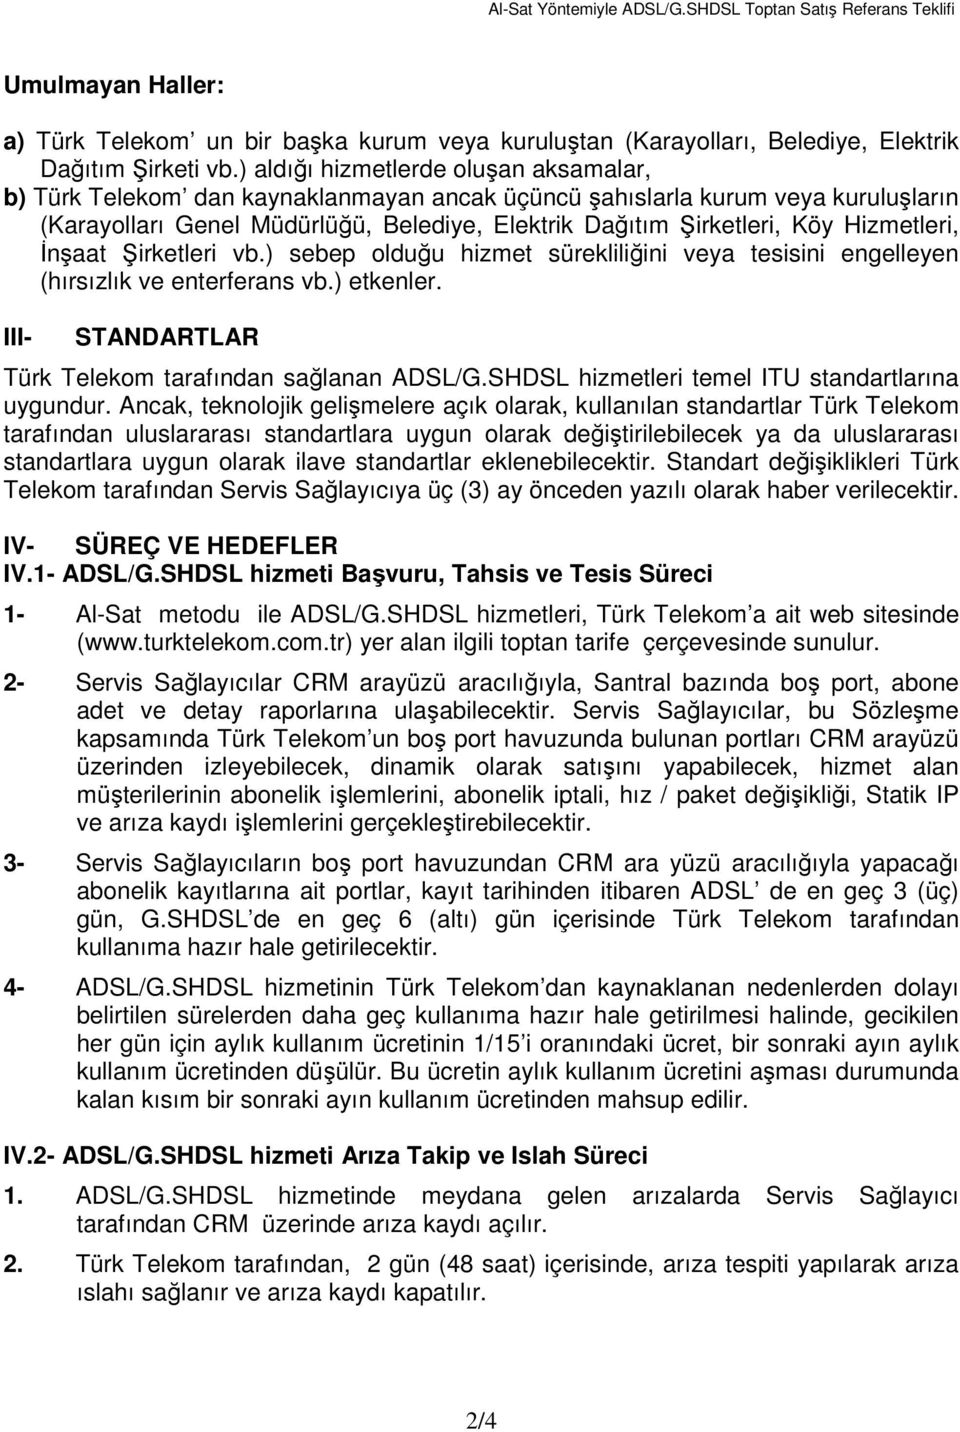 Hizmetleri, İnşaat Şirketleri vb.) sebep olduğu hizmet sürekliliğini veya tesisini engelleyen (hırsızlık ve enterferans vb.) etkenler. III- STANDARTLAR Türk Telekom tarafından sağlanan ADSL/G.